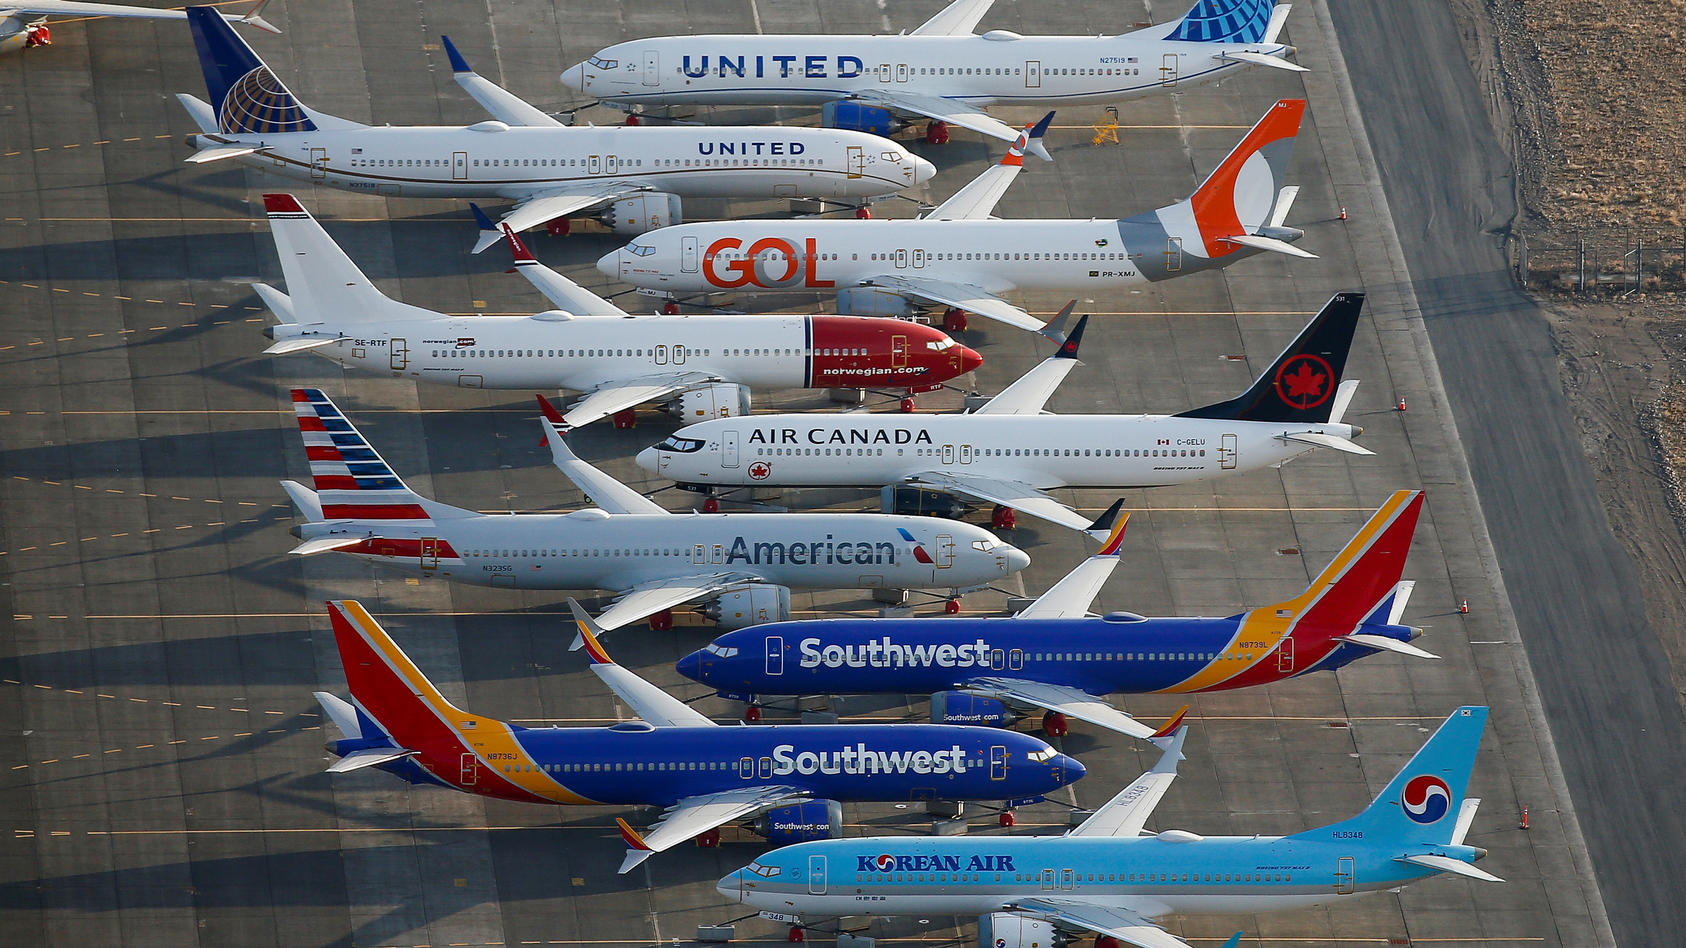 Krisenflieger 737 Max: Boeing findet neues Softwareproblem